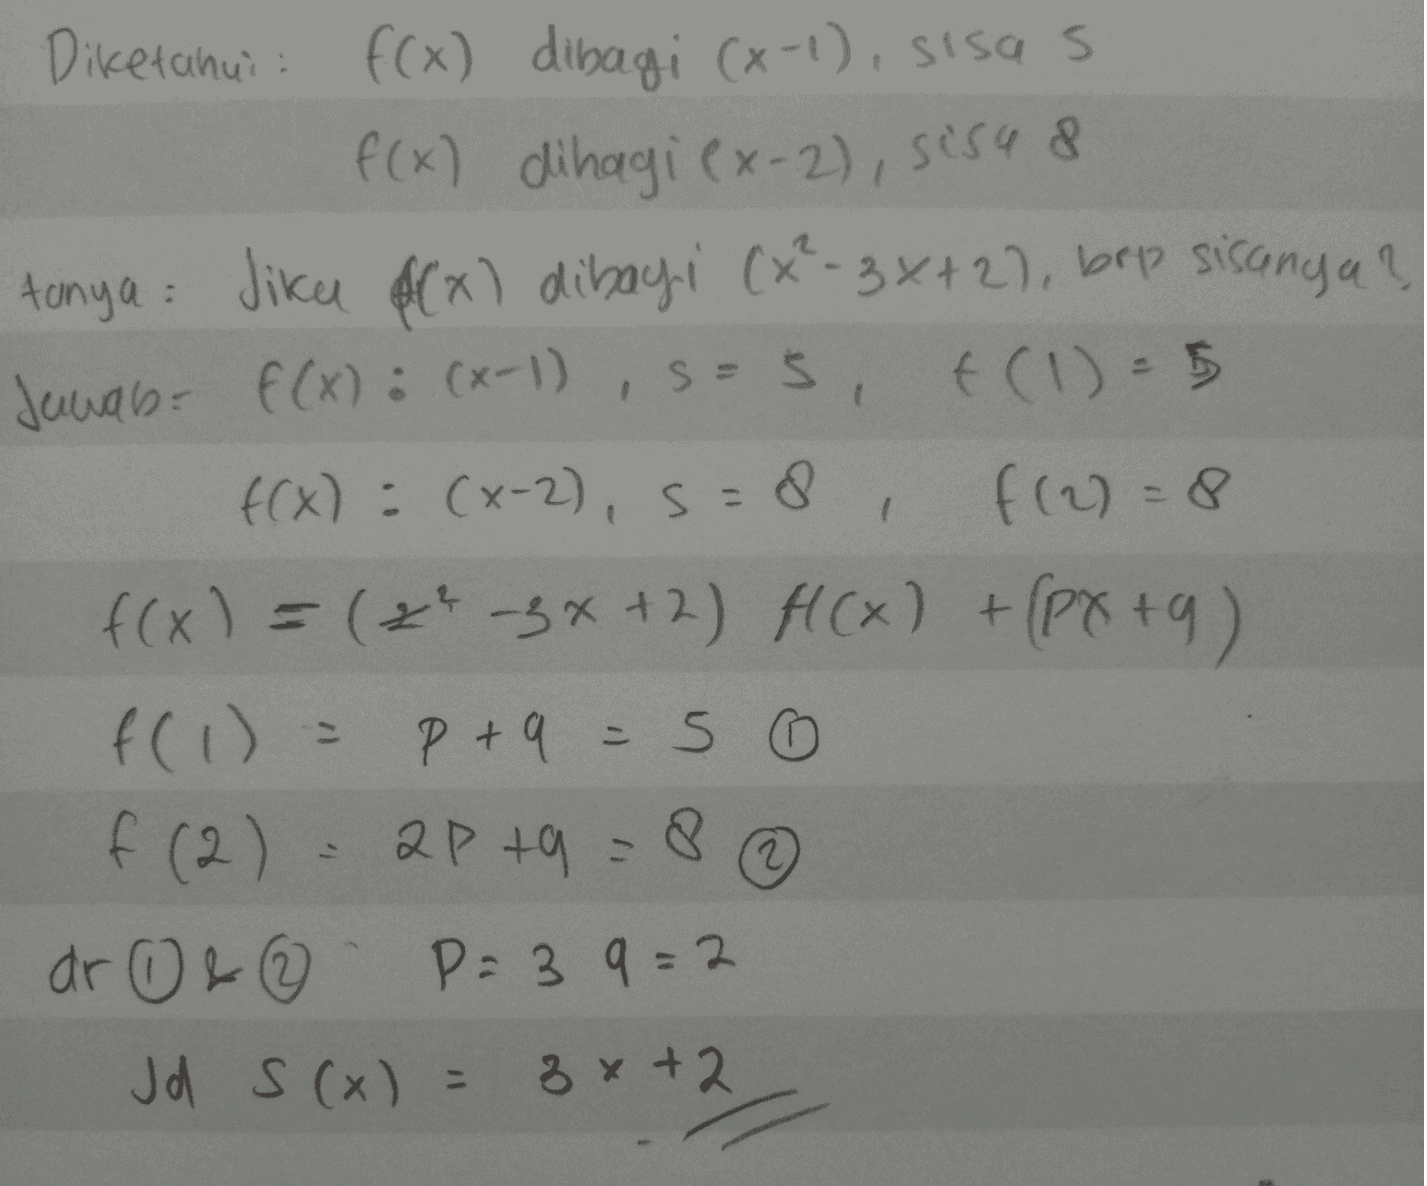 Diketahui: f(x) dibagi (x-1), Sisas f(x) dihagi (x-2), sisa 8 tanya Jika $(x) dibagi (x²-3x+2), brp sisanya? Jawab: f(x) : (x-1), S=s, f(1) = 5 f(x) = (x-2), S = 8 f(2)=8 f(x) = (x -3x+2) f(x) + (PX+9) f(1) = P + 9 = 50 apta = 8 ar 0 & ② P=39=2 Jd S(x) = 3x+2 f (2) 2 